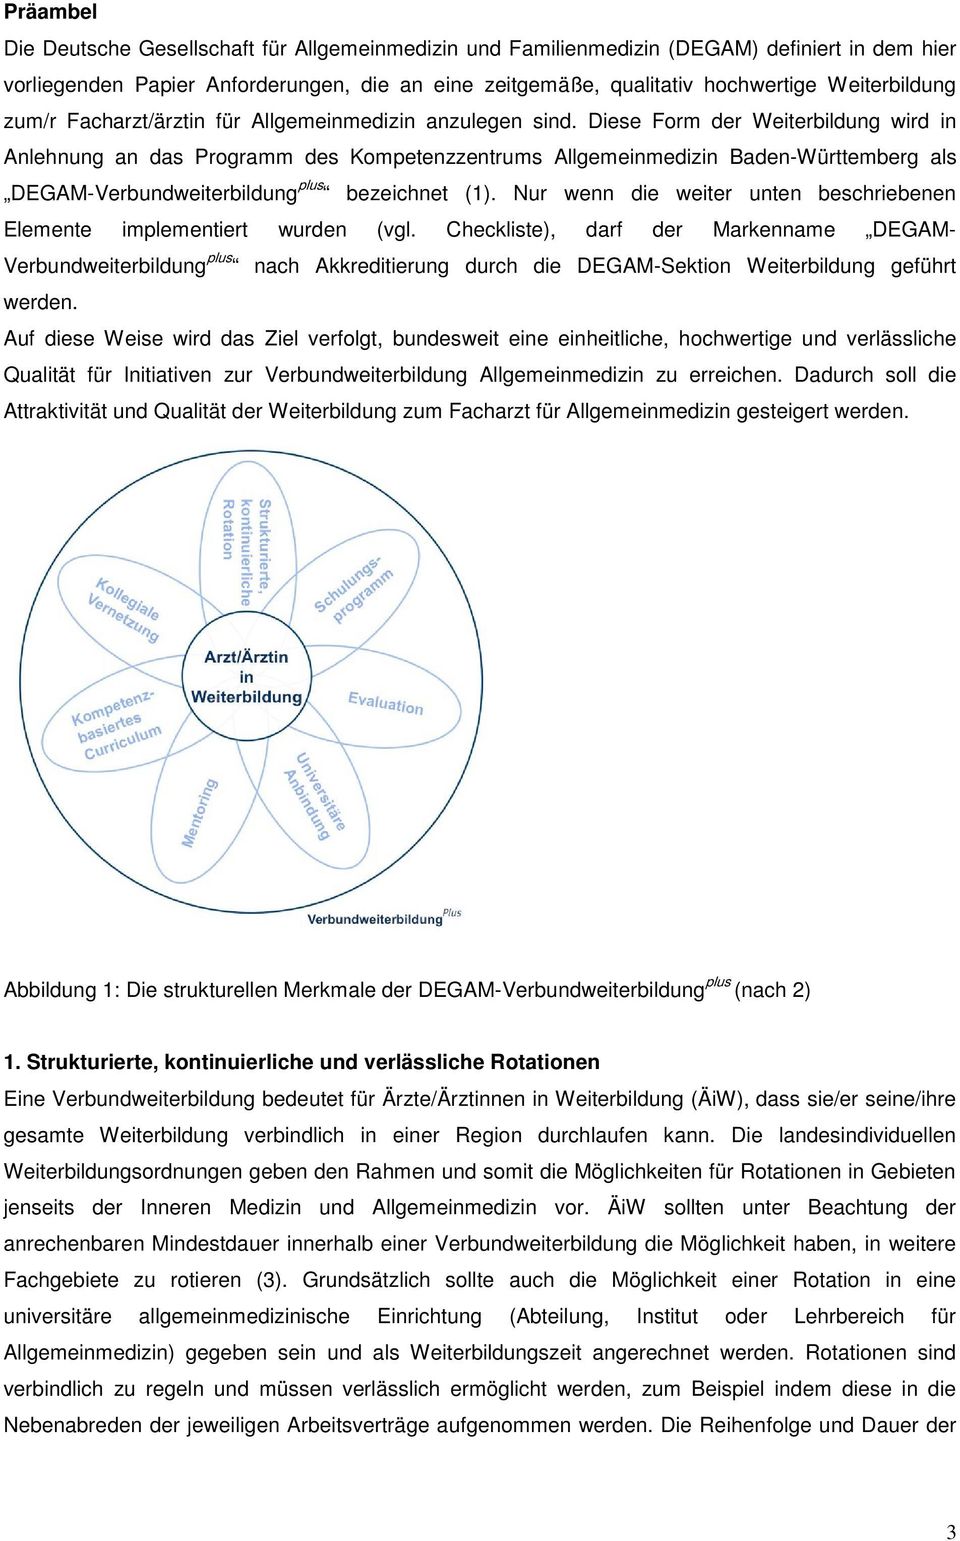 Diese Form der Weiterbildung wird in Anlehnung an das Programm des Kompetenzzentrums Allgemeinmedizin Baden-Württemberg als DEGAM-Verbundweiterbildung plus bezeichnet (1).